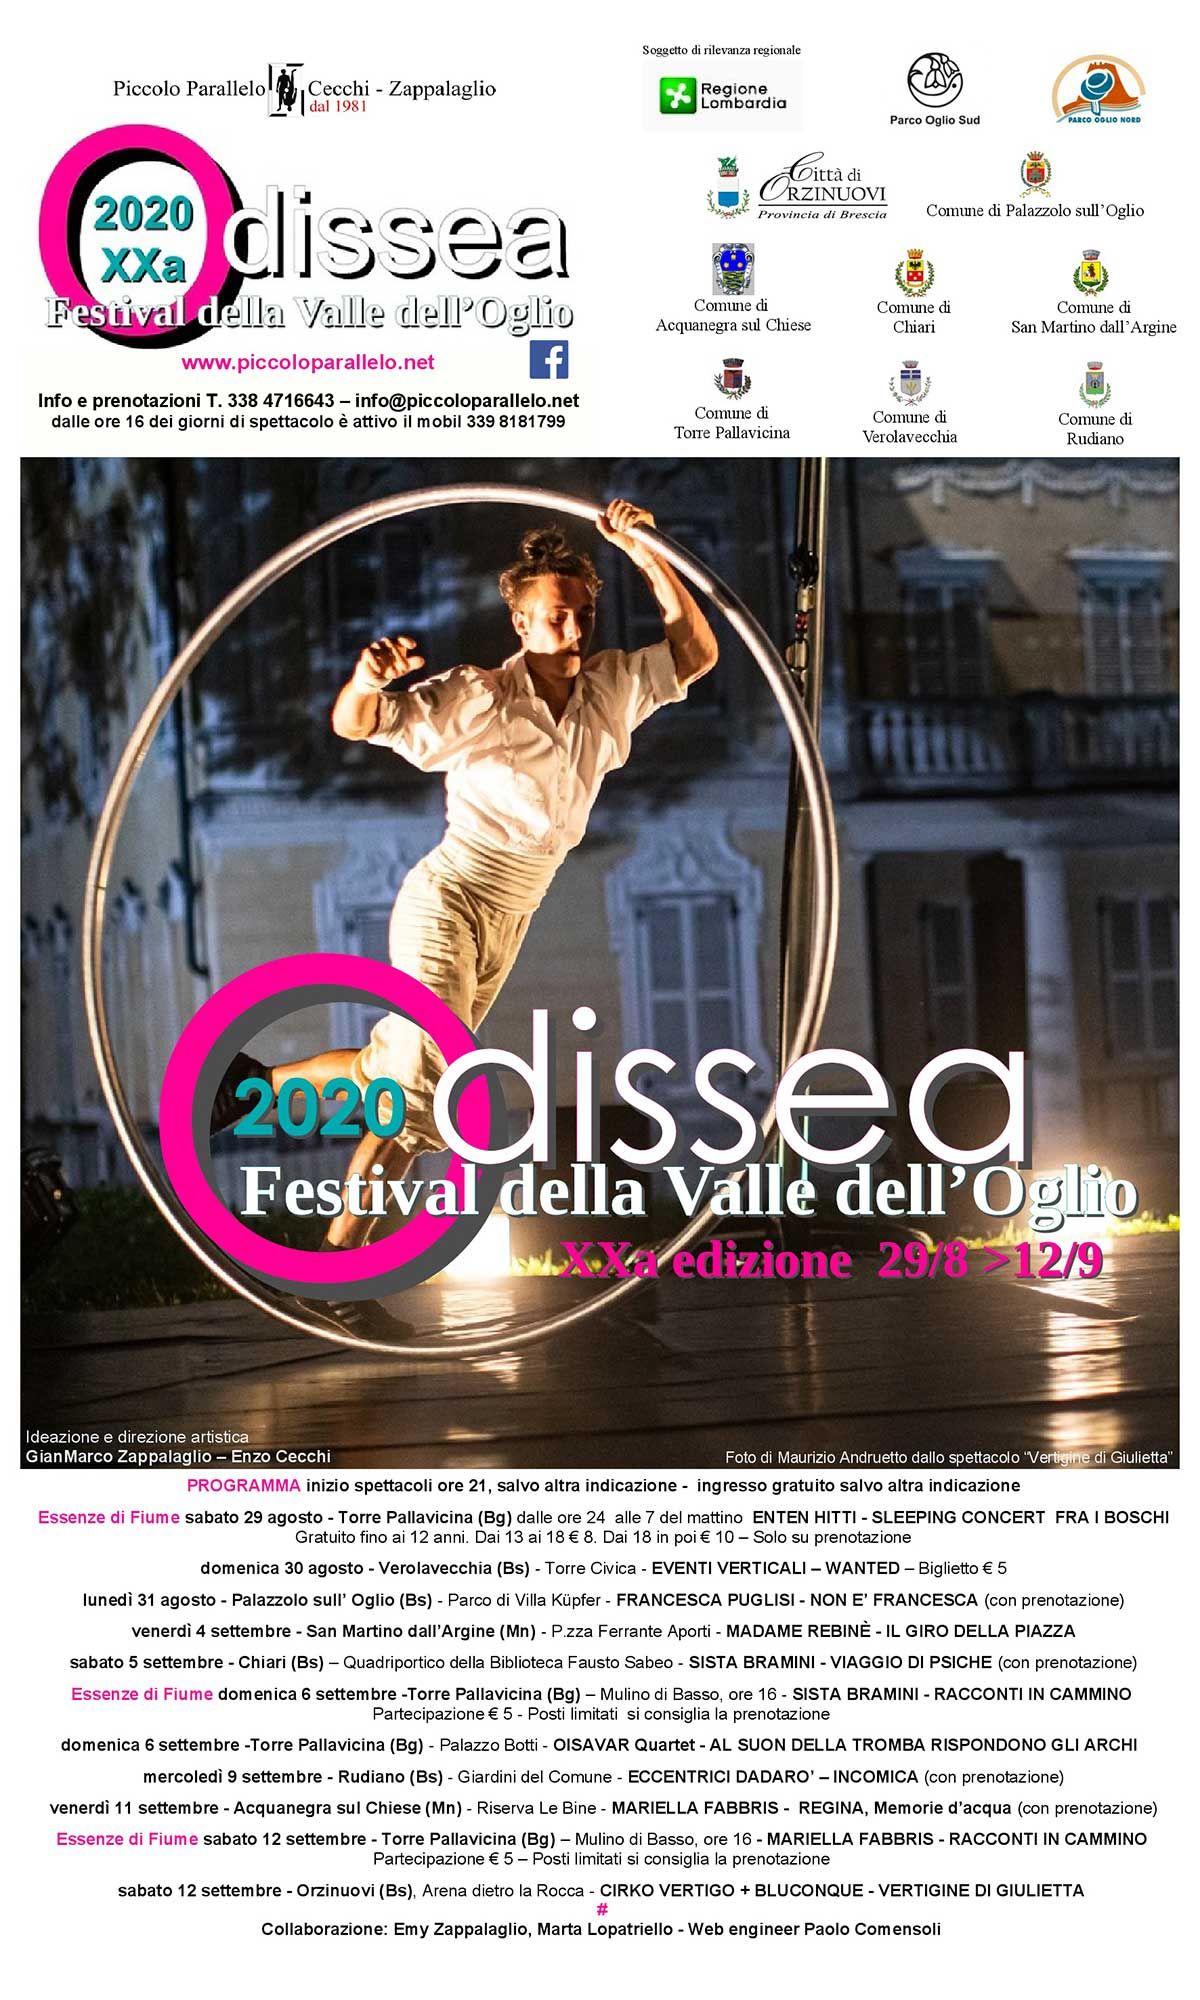 odissea-festival-valle-oglio-2020